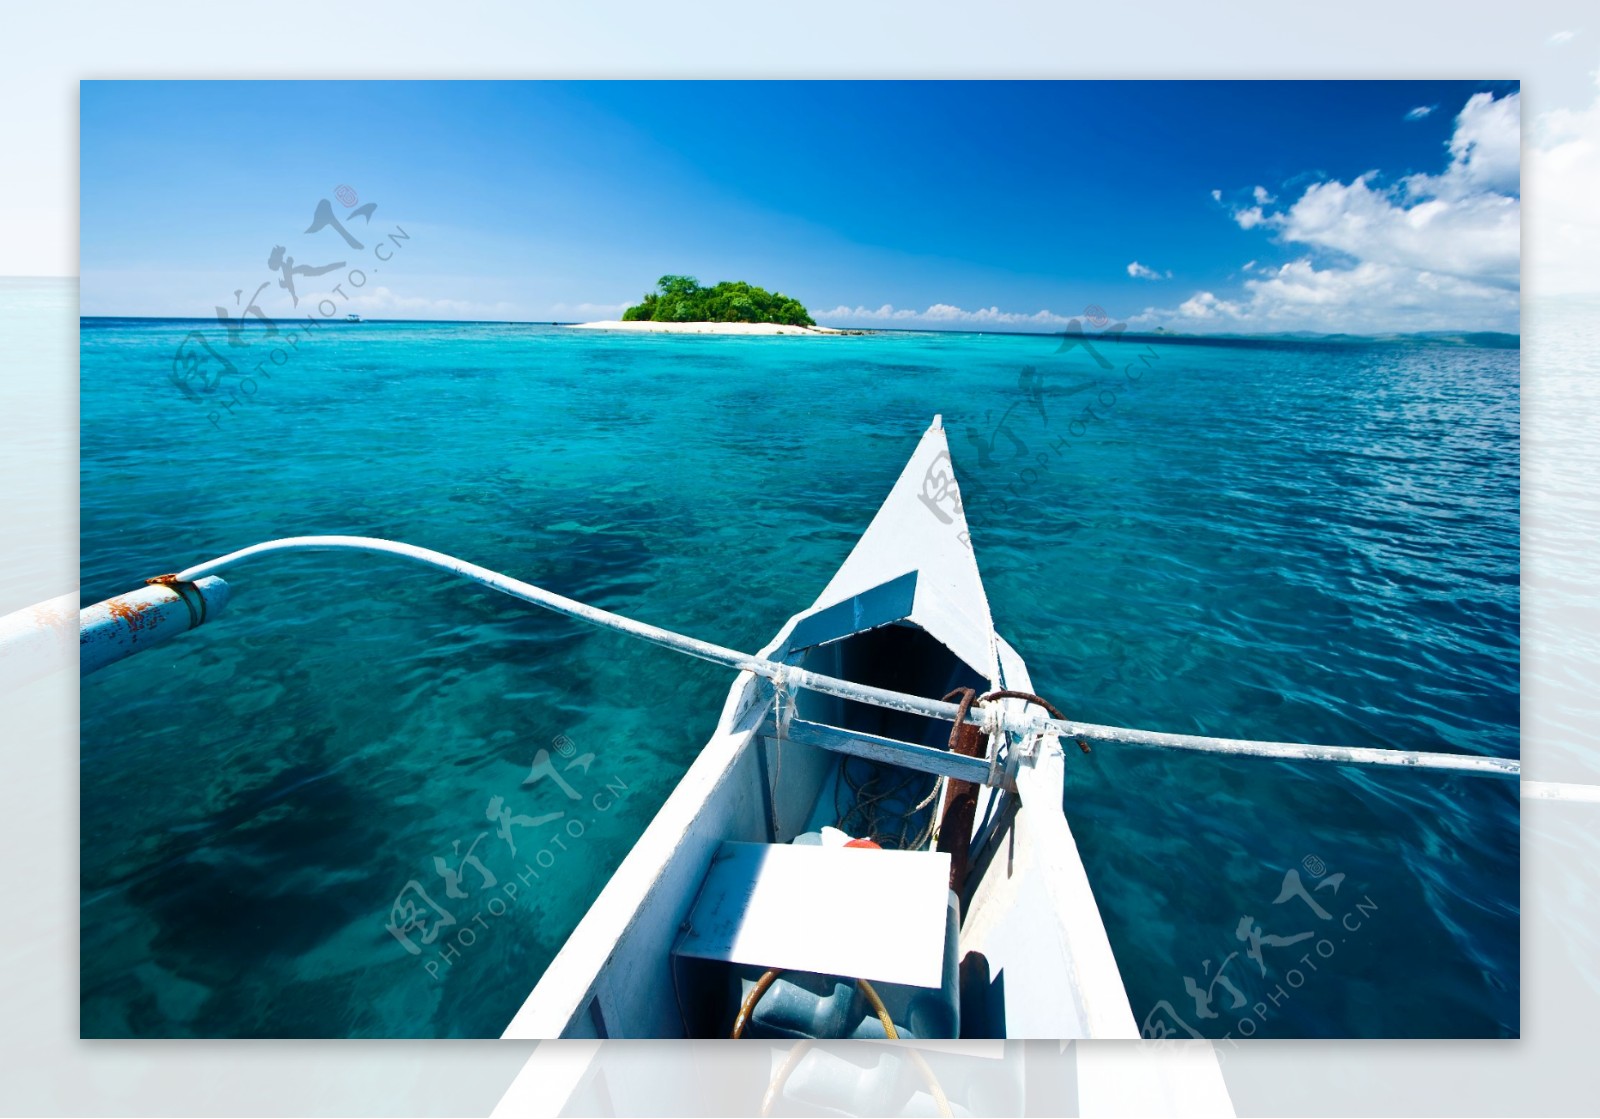 菲律宾萨马岛旅游度假海景图片